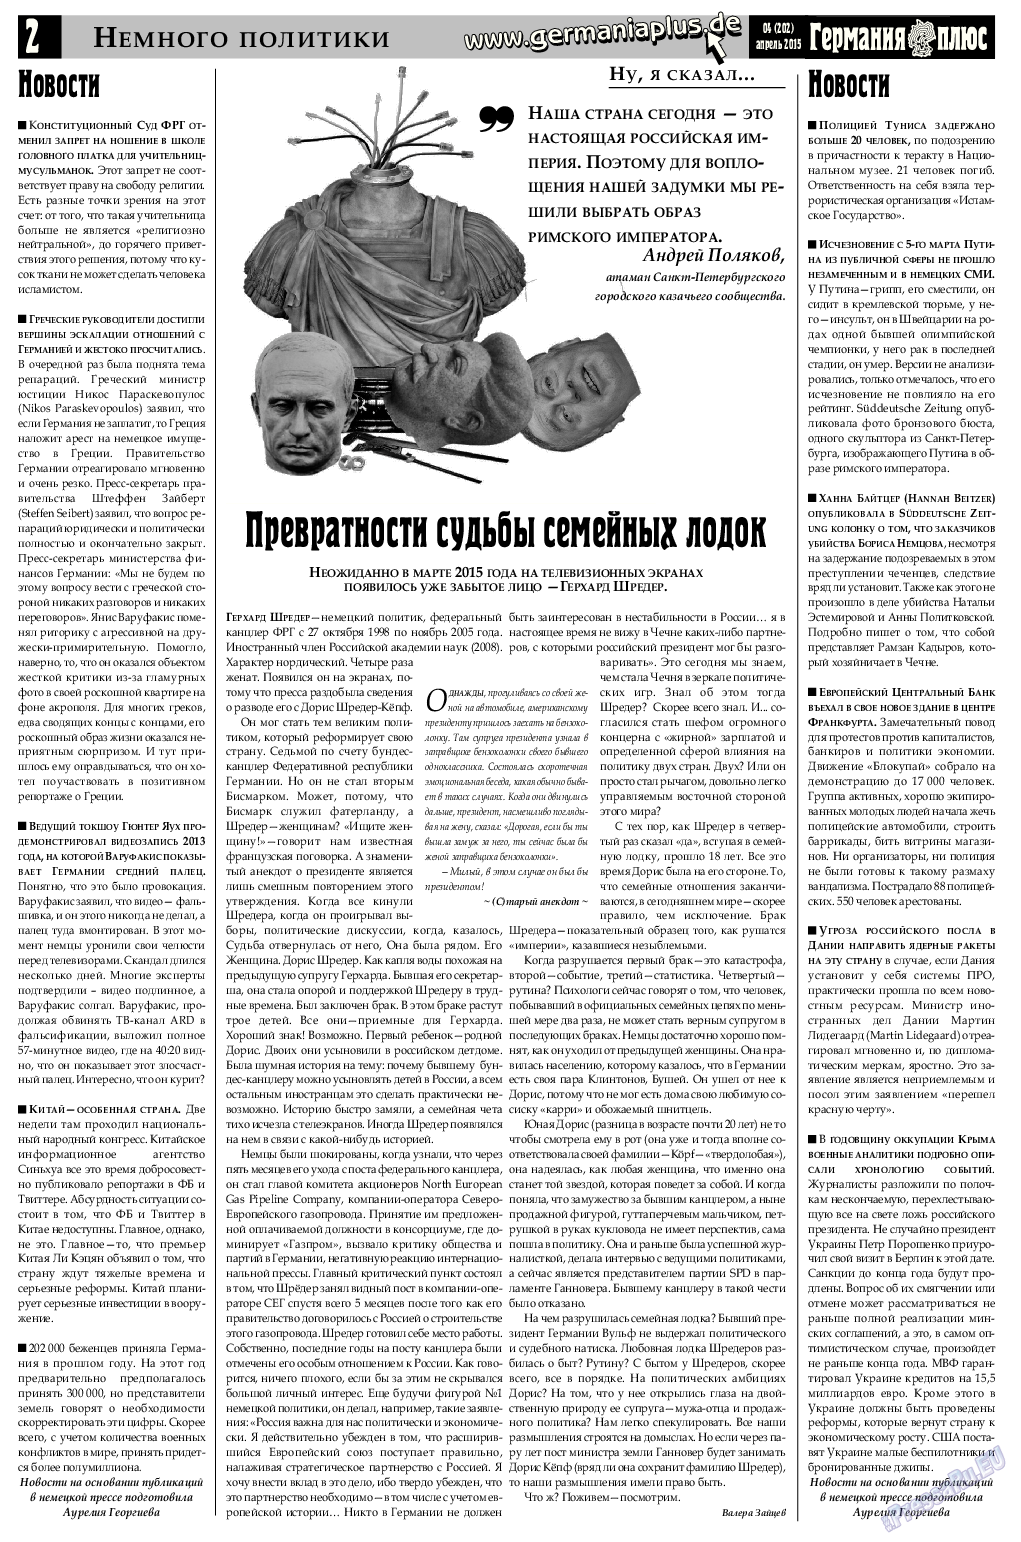 Германия плюс, газета. 2015 №4 стр.2